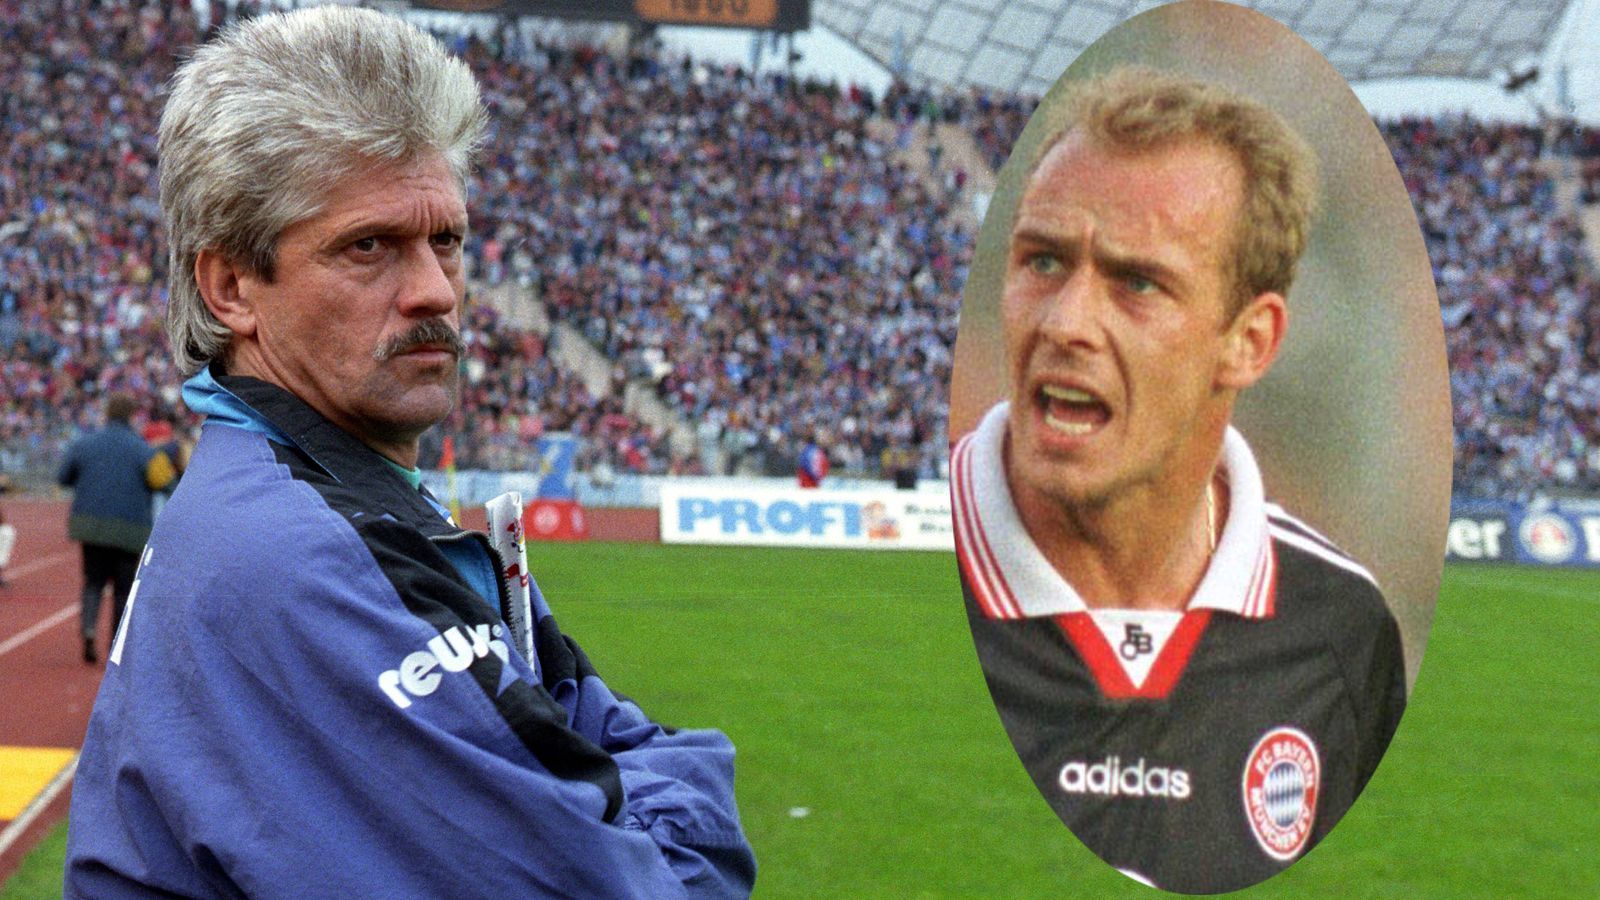 <strong>Werner Lorant und Mario Basler</strong><br>Zwischen Werner Lorant, dem damaligen Trainer von 1860 München, und dem früheren Bayern-Spieler Mario Basler kam es zwar nicht zu Handgreiflichkeiten - aber es war kurz davor. Basler stürmte wutentbrannt auf Lorant zu, beide fuchtelten wütend mit den Armen voreinander und lösten eine Rudelbildung aus.&nbsp;